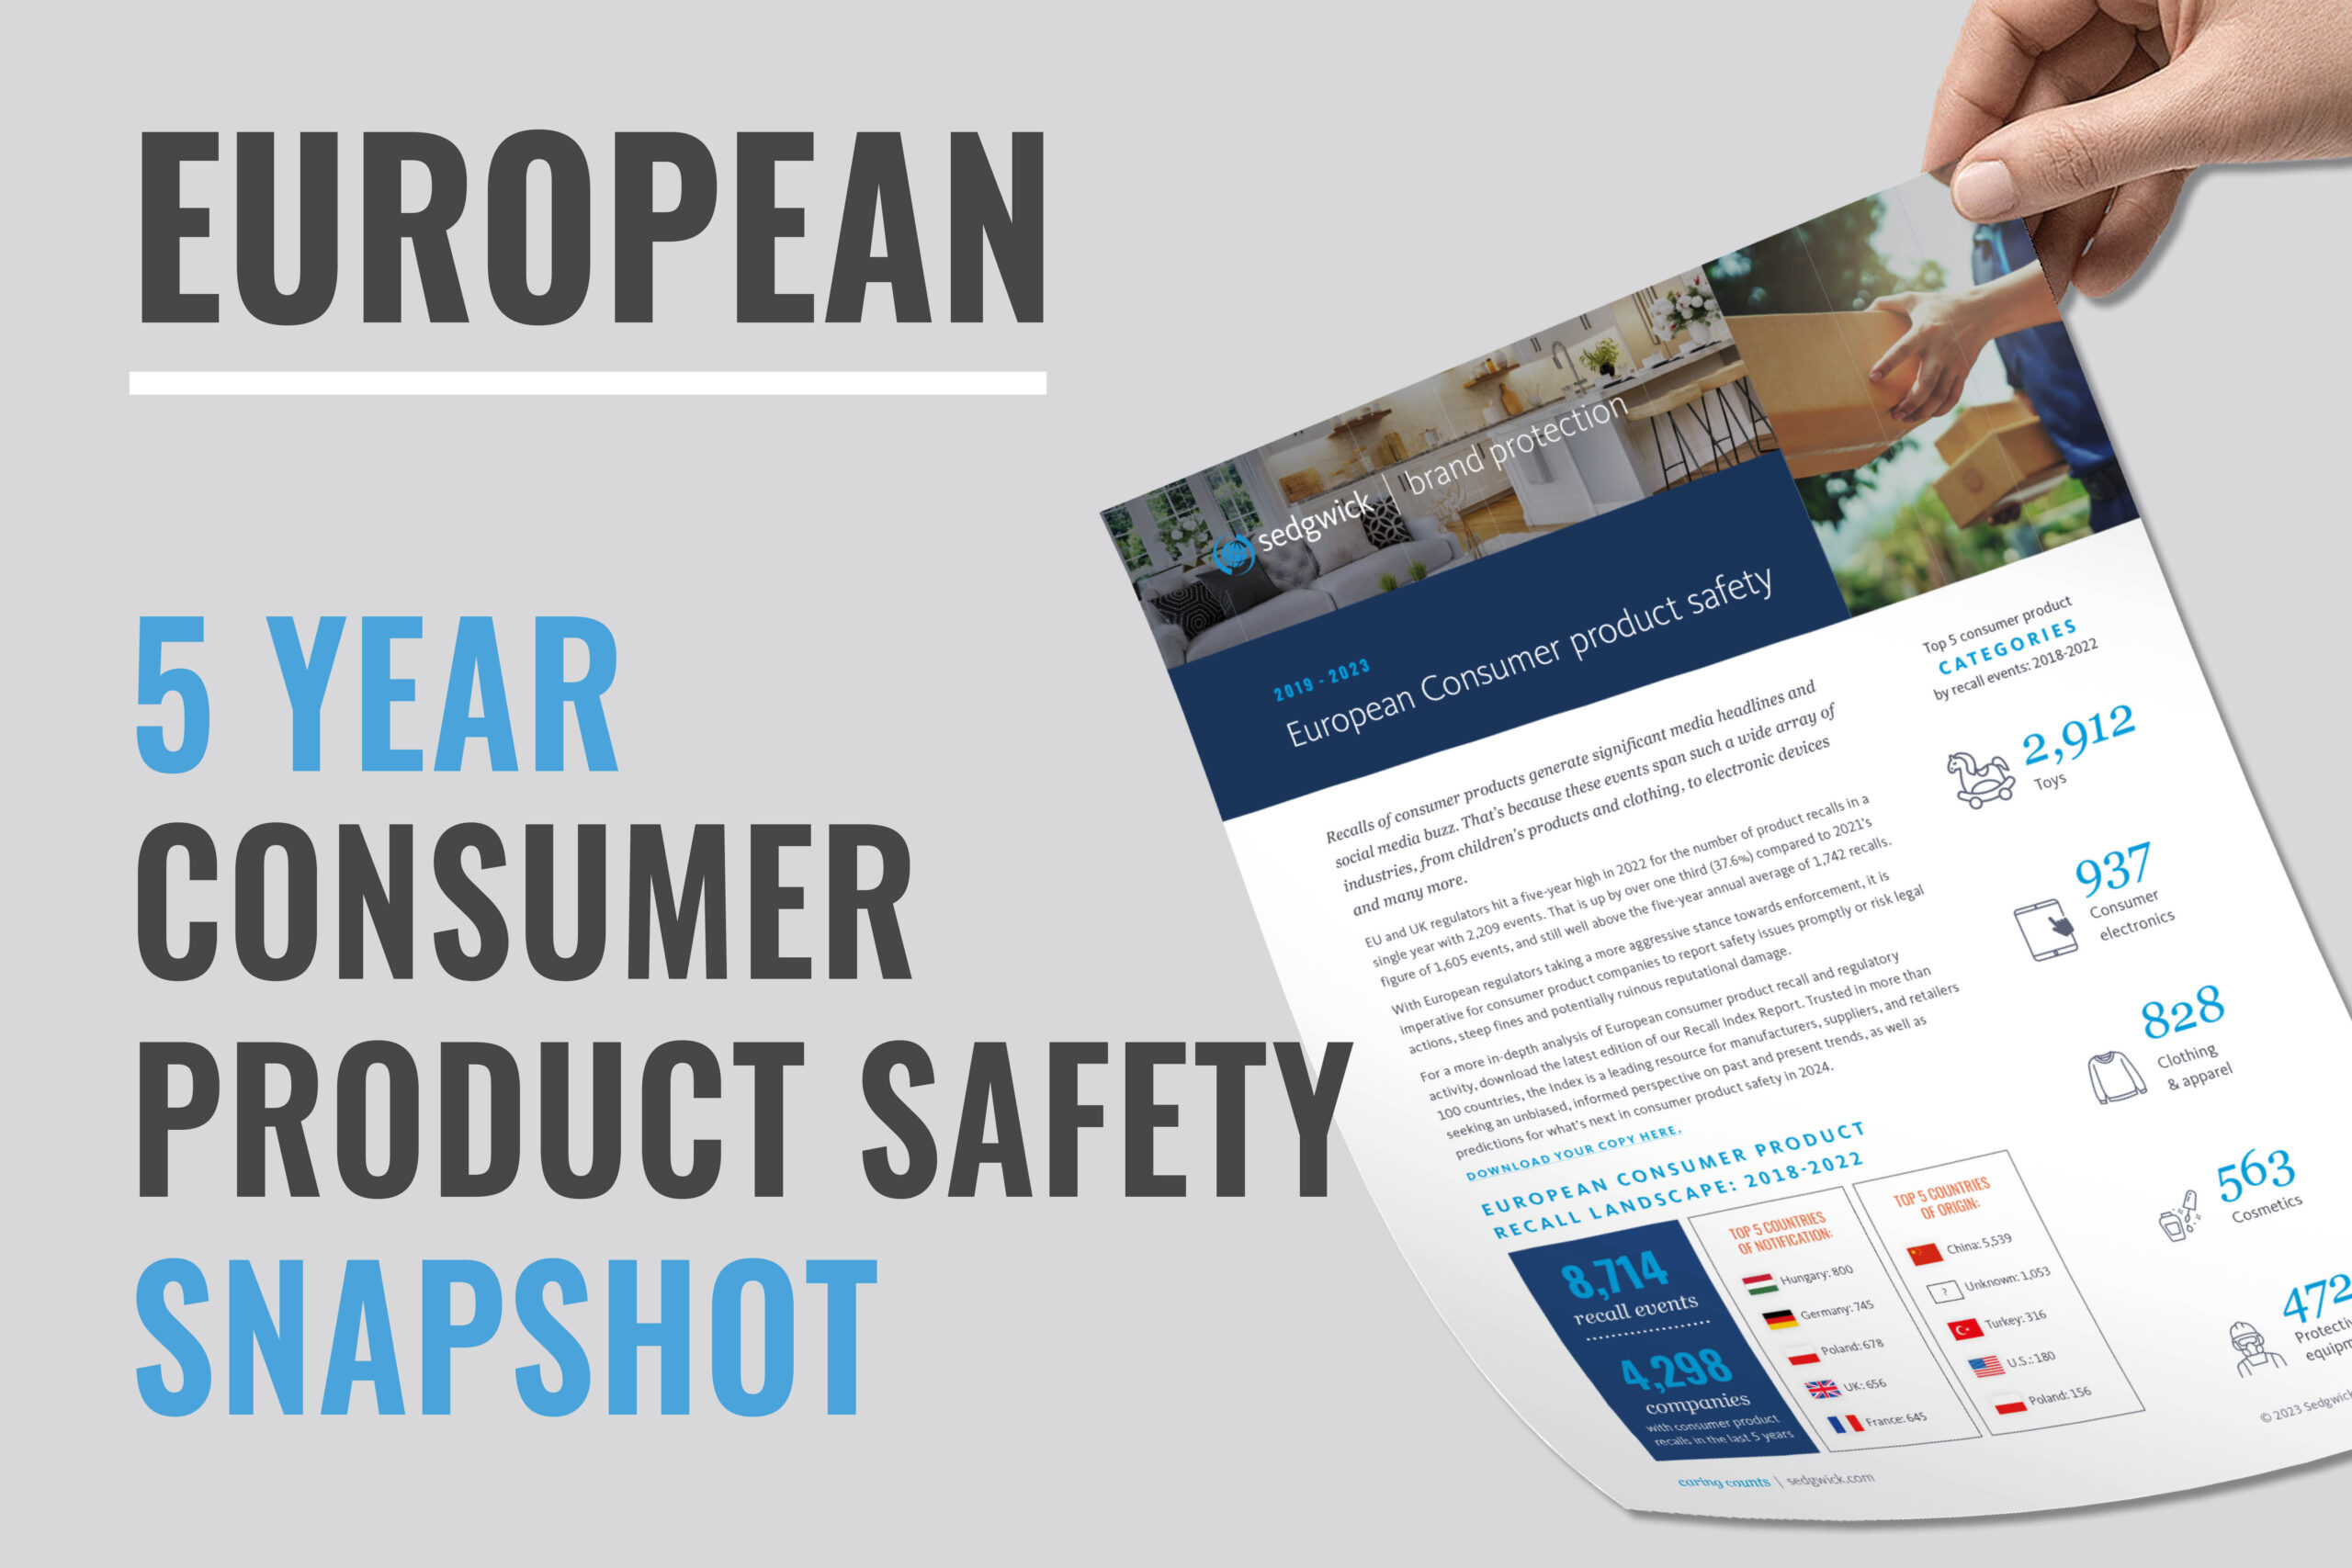 Segurança dos produtos de consumo europeus e informações sobre a recolha de produtos - Descarregar agora